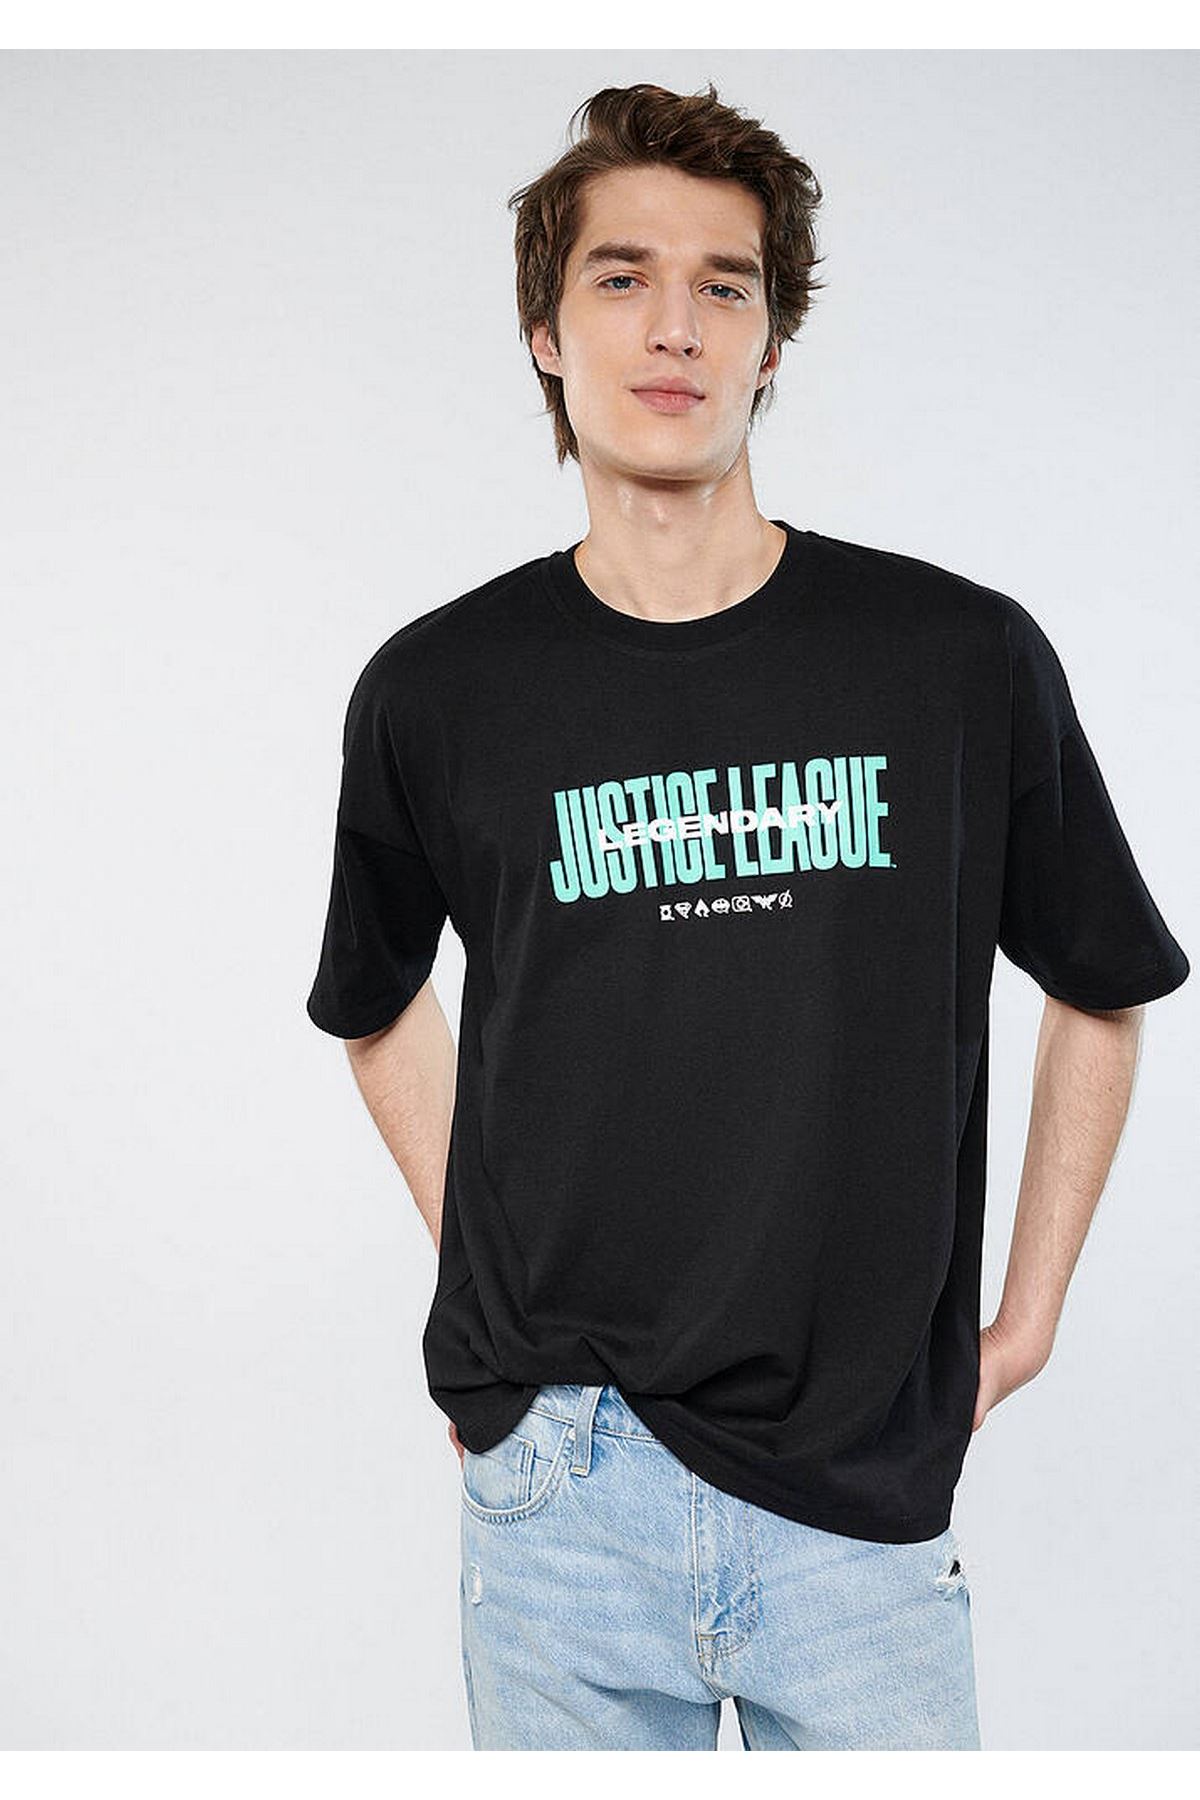 Justıce League Baskılı Mavi Erkek Siyah Tişört - M0611243-900